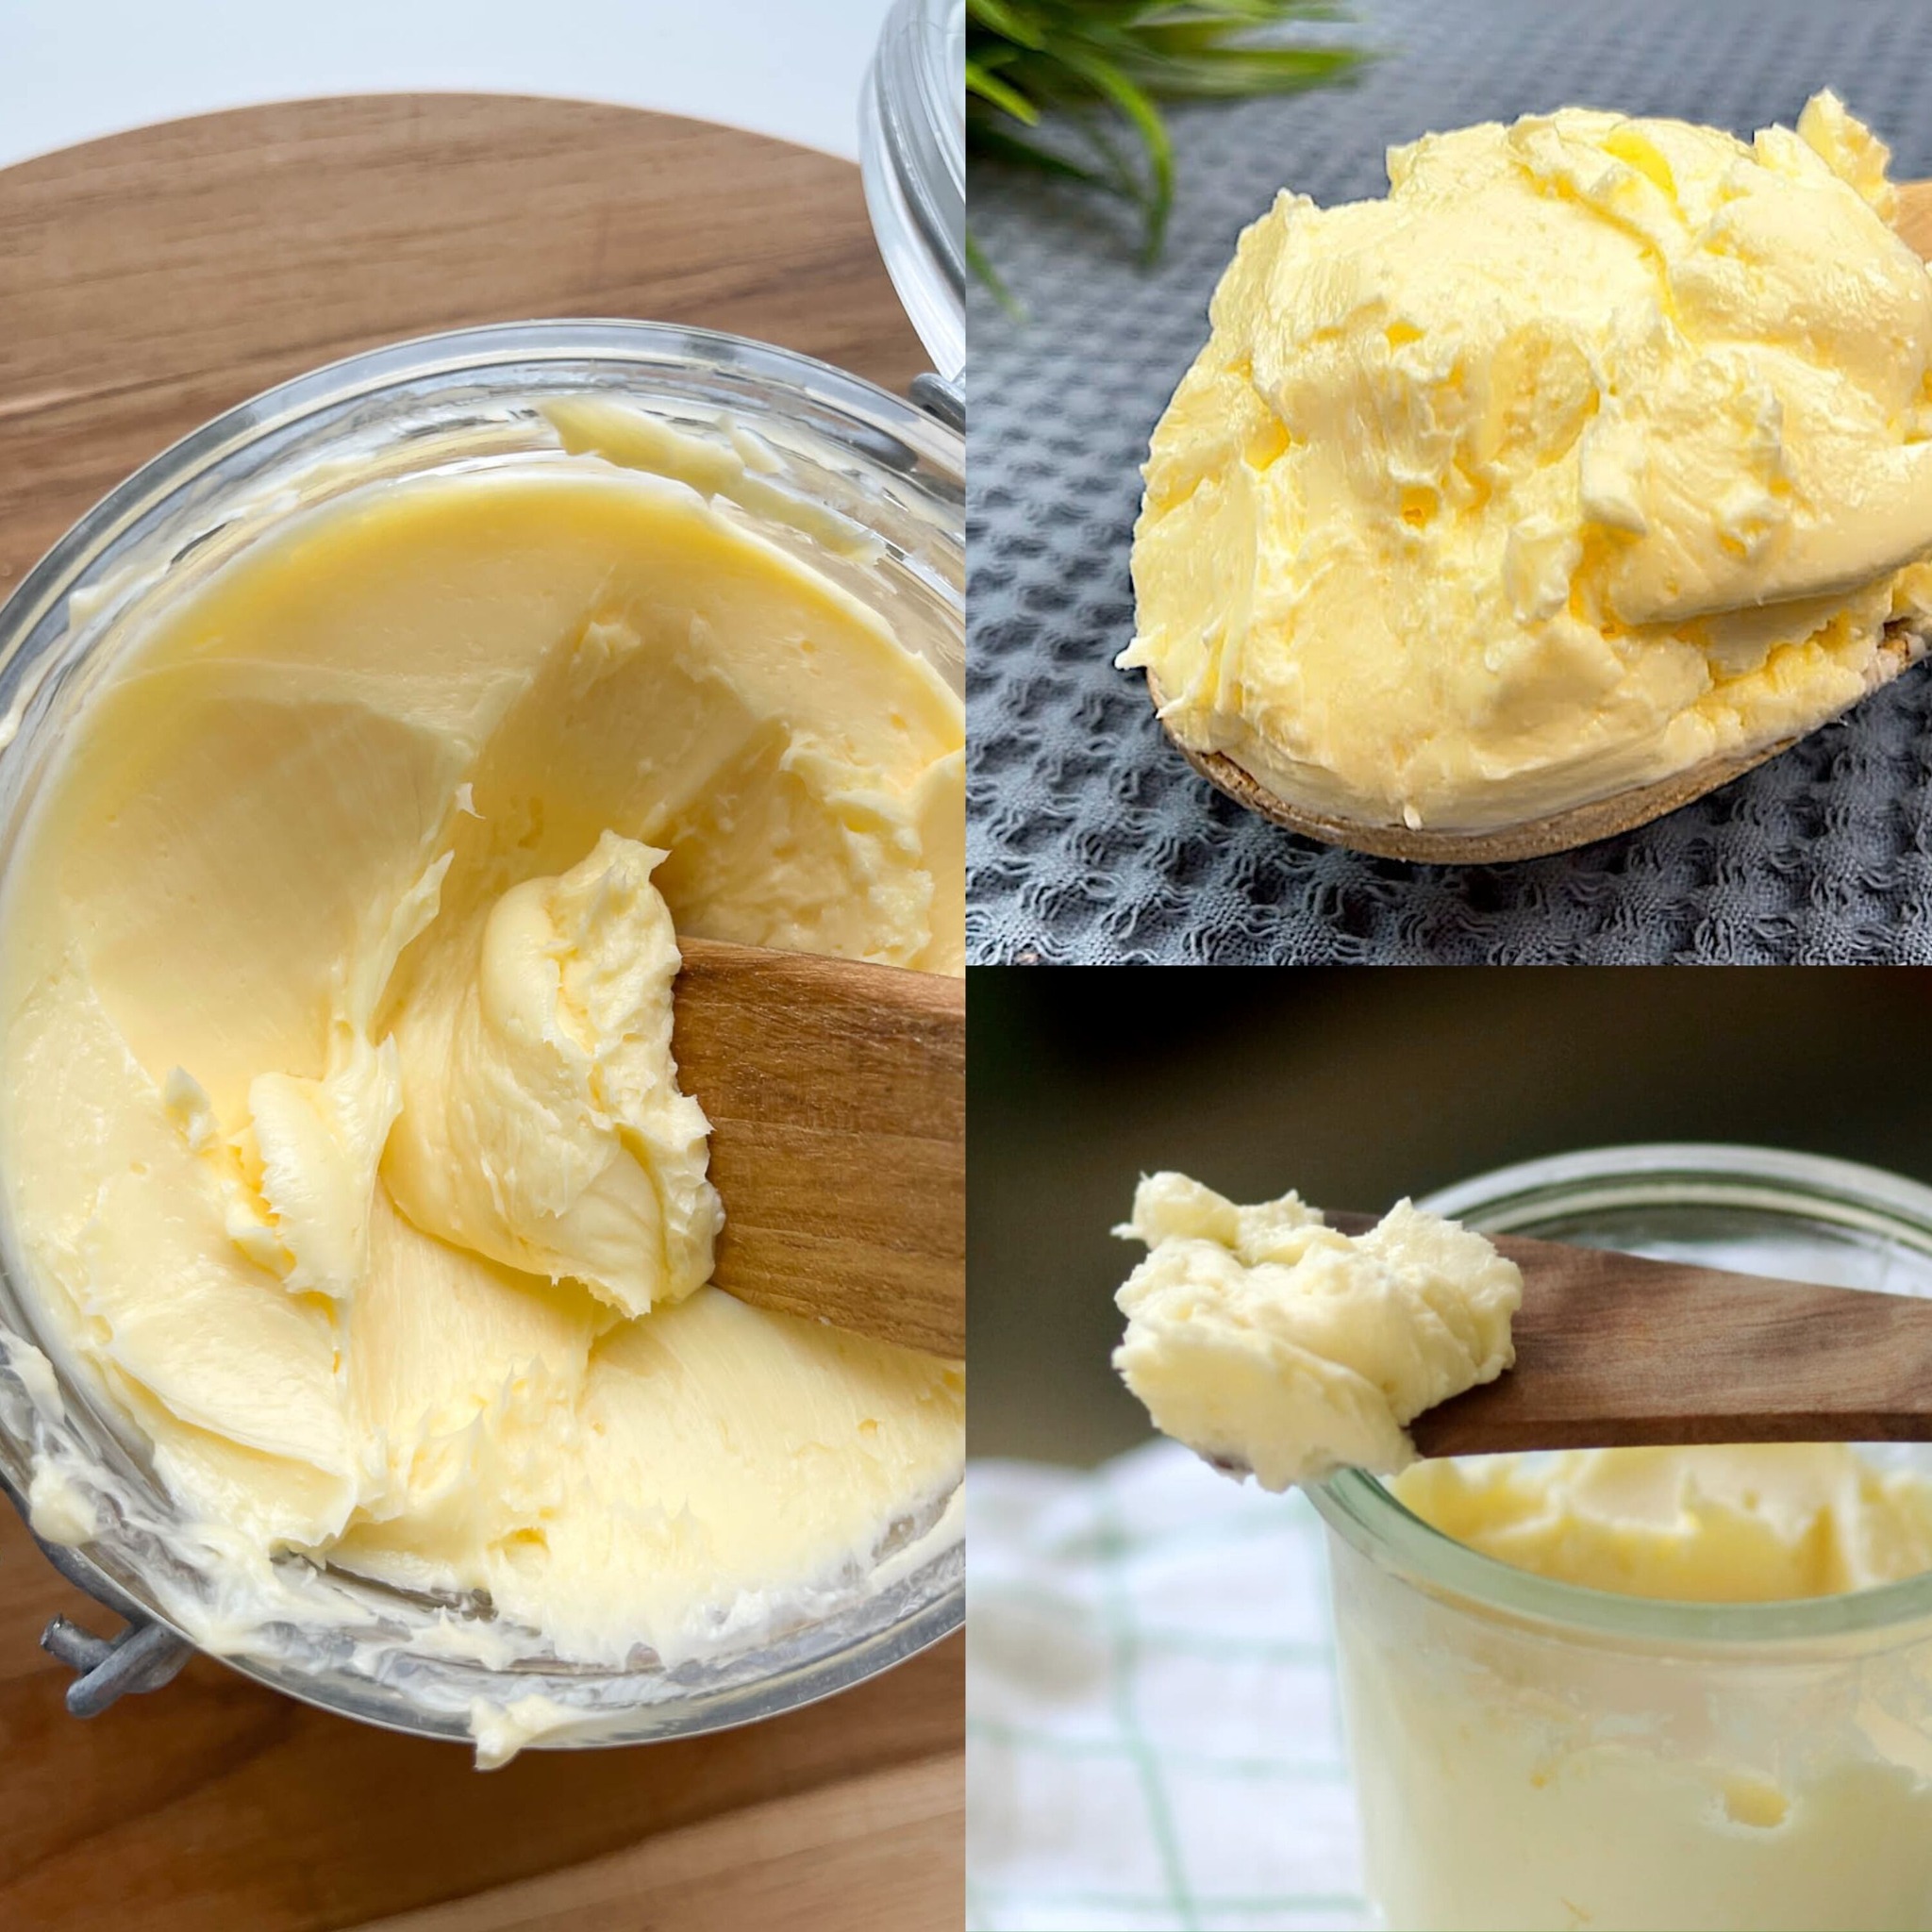 Transform Yogurt into Homemade Butter